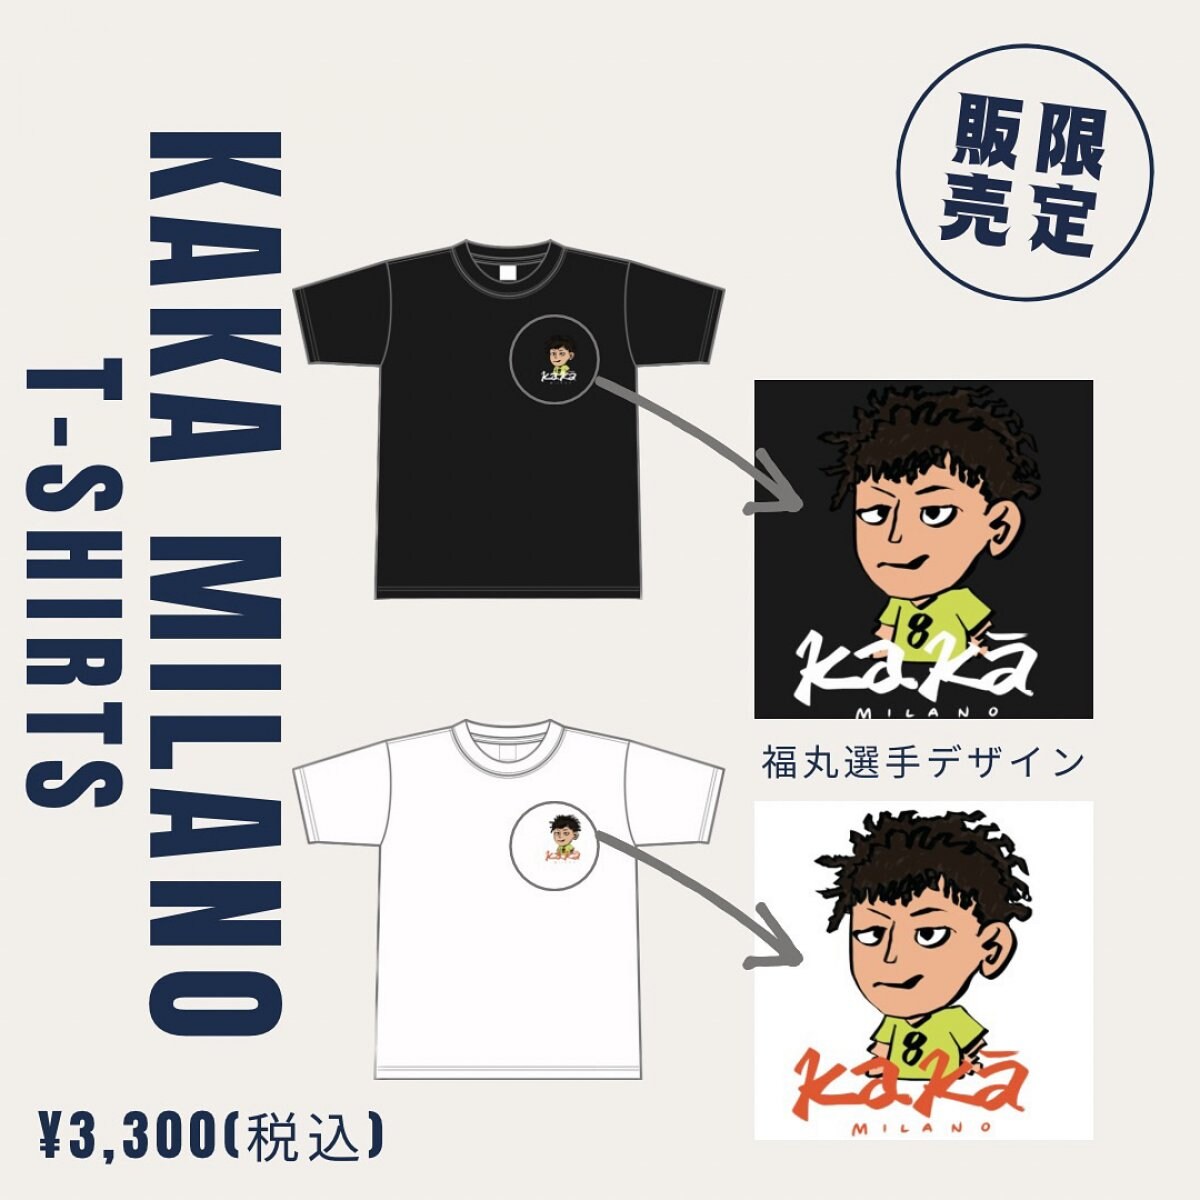 【限定販売】KAKA MILANO T-Shirts/ブラック